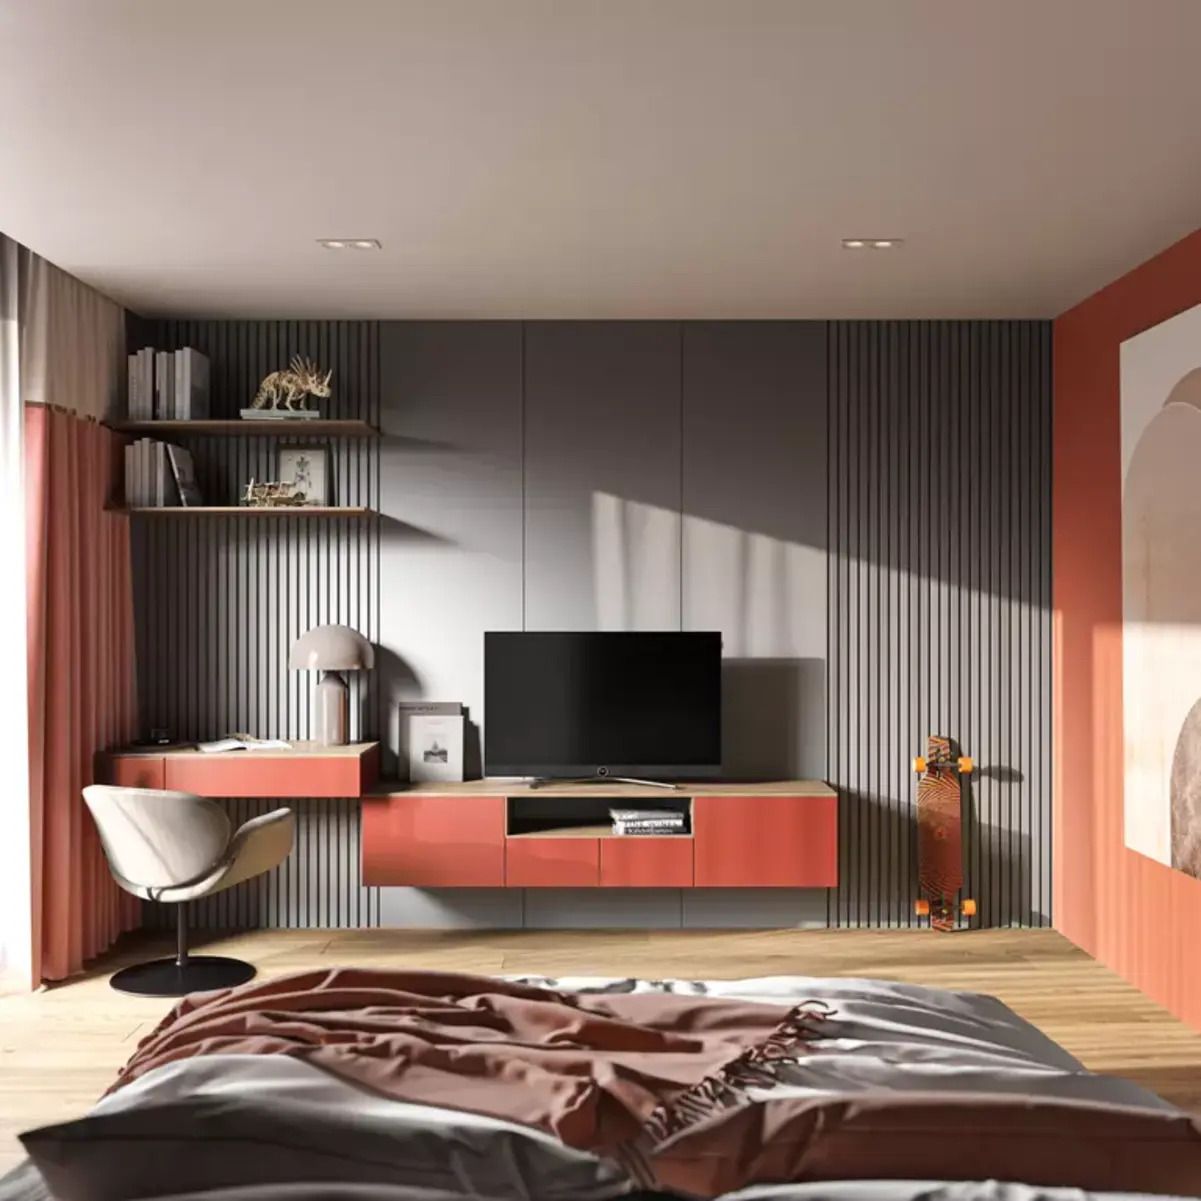 Телевизор в спальне - в каких местах его лучше ставить - Недвижимость